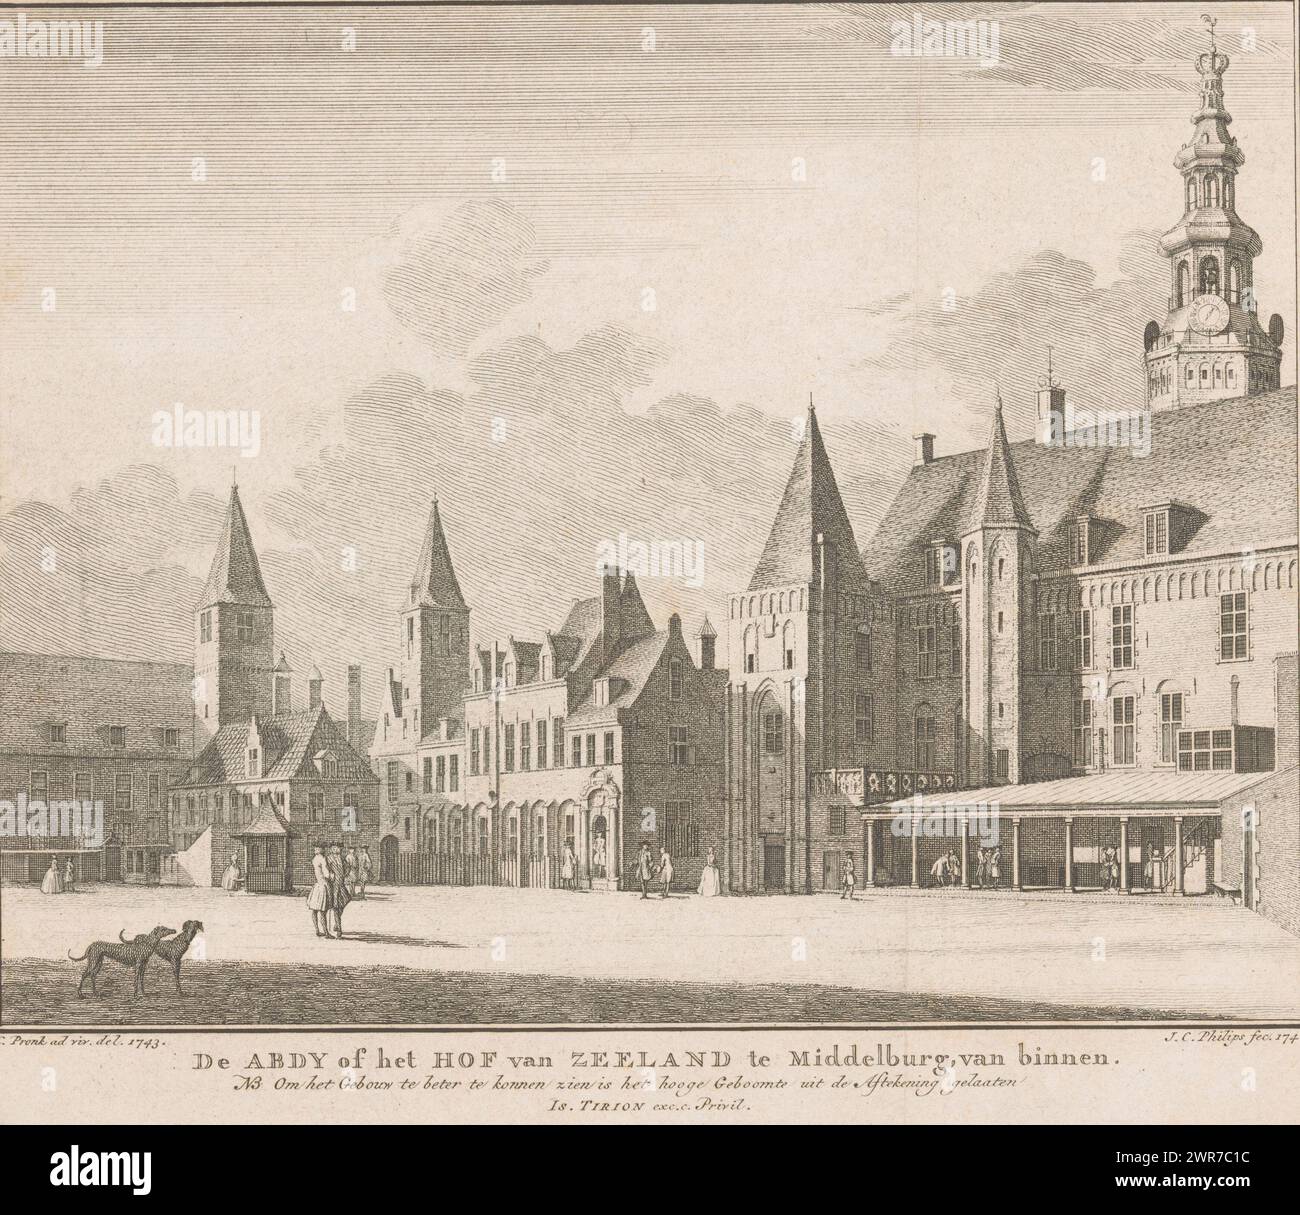 Vista dell'Abdijplein a Middelburg, 1743, De Abdy o Hof van Zeeland a Middelburg, dall'interno. NB, al fine di ottenere una migliore vista dell'edificio, gli alberi alti sono stati lasciati fuori dal disegno (titolo sull'oggetto), Vista dell'Abdijplein a Middelburg, nella situazione intorno al 1743. La Corte di Zelanda aveva la sua sede negli edifici dell'ex abbazia, in Abbey Square. Sullo sfondo a destra c'è The Lange Jan., stampatore: Jan Caspar Philips, dopo aver disegnato: Cornelis Pronk, editore: Isaak Tirion, Amsterdam, 1746, carta, incisione, altezza 176 mm x larghezza 209 mm Foto Stock